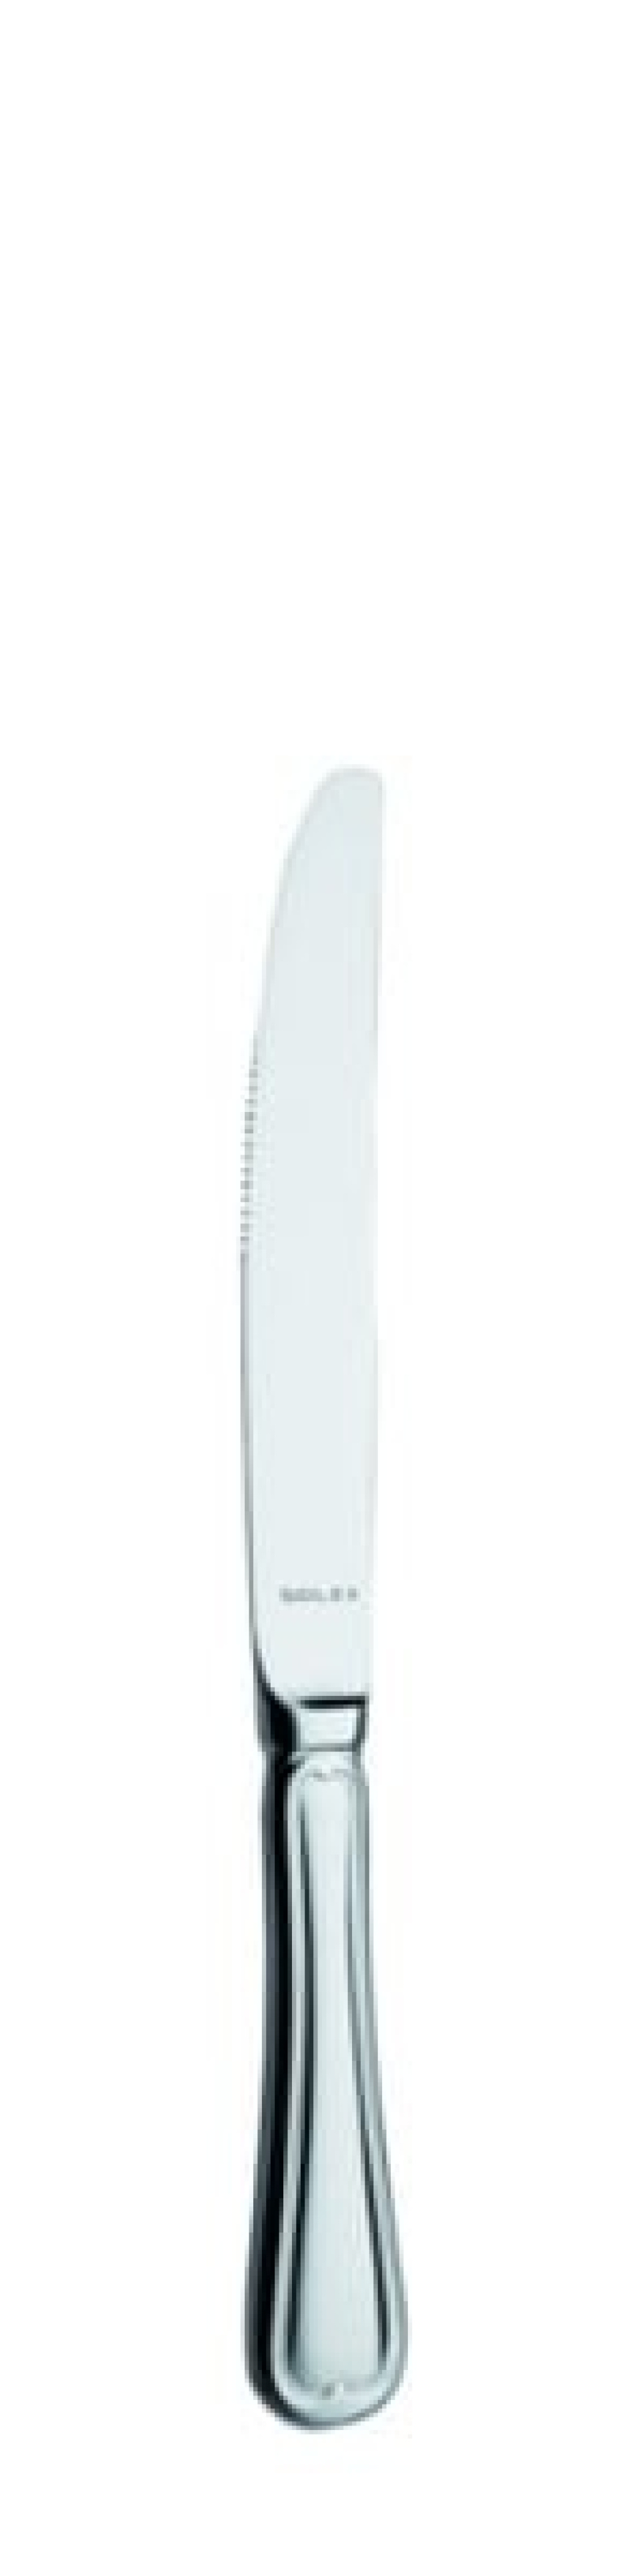 Nóż deserowy Laila 211 mm - Solex w grupie Nakrycie stołu / Sztućce / Noże w The Kitchen Lab (1284-21547)